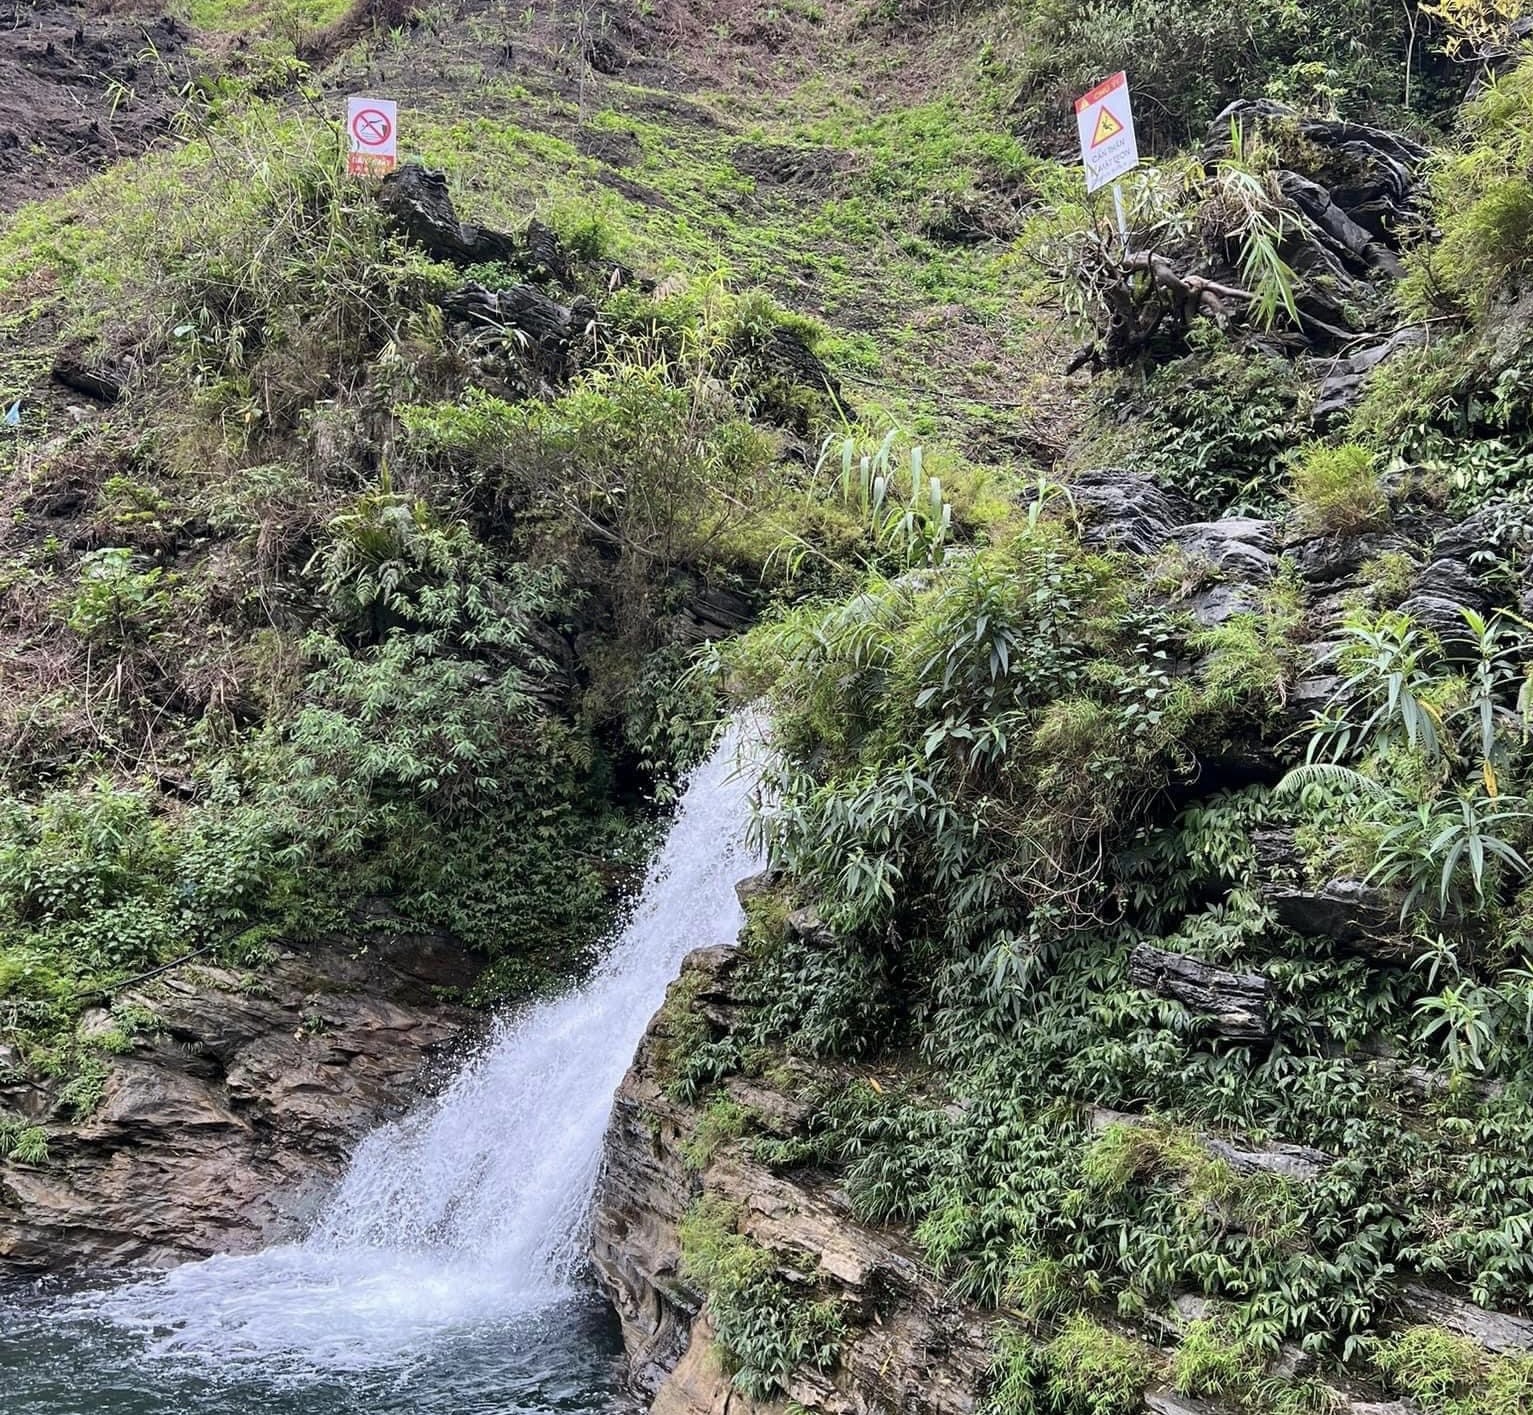 Một số biển cảnh báo nguy hiểm, cấm nhảy đã được cắm tại thác Du Già nhưng vẫn bị du khách phớt lờ.